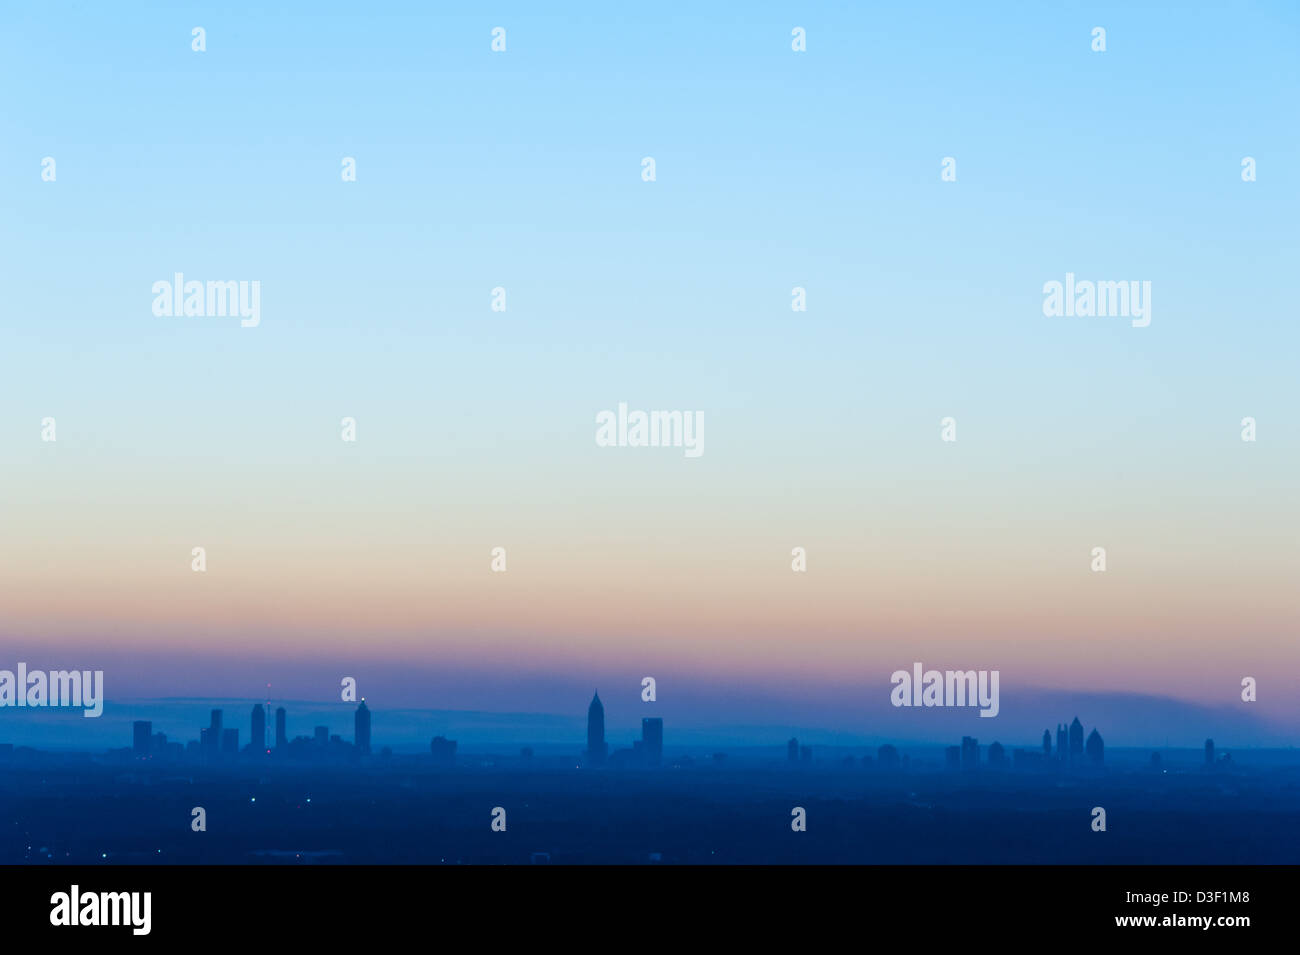 Skyline von Atlanta in die satten Farben der Dämmerung getaucht. Atlanta, Georgia, USA. (Negative Raum für Kopie) Stockfoto